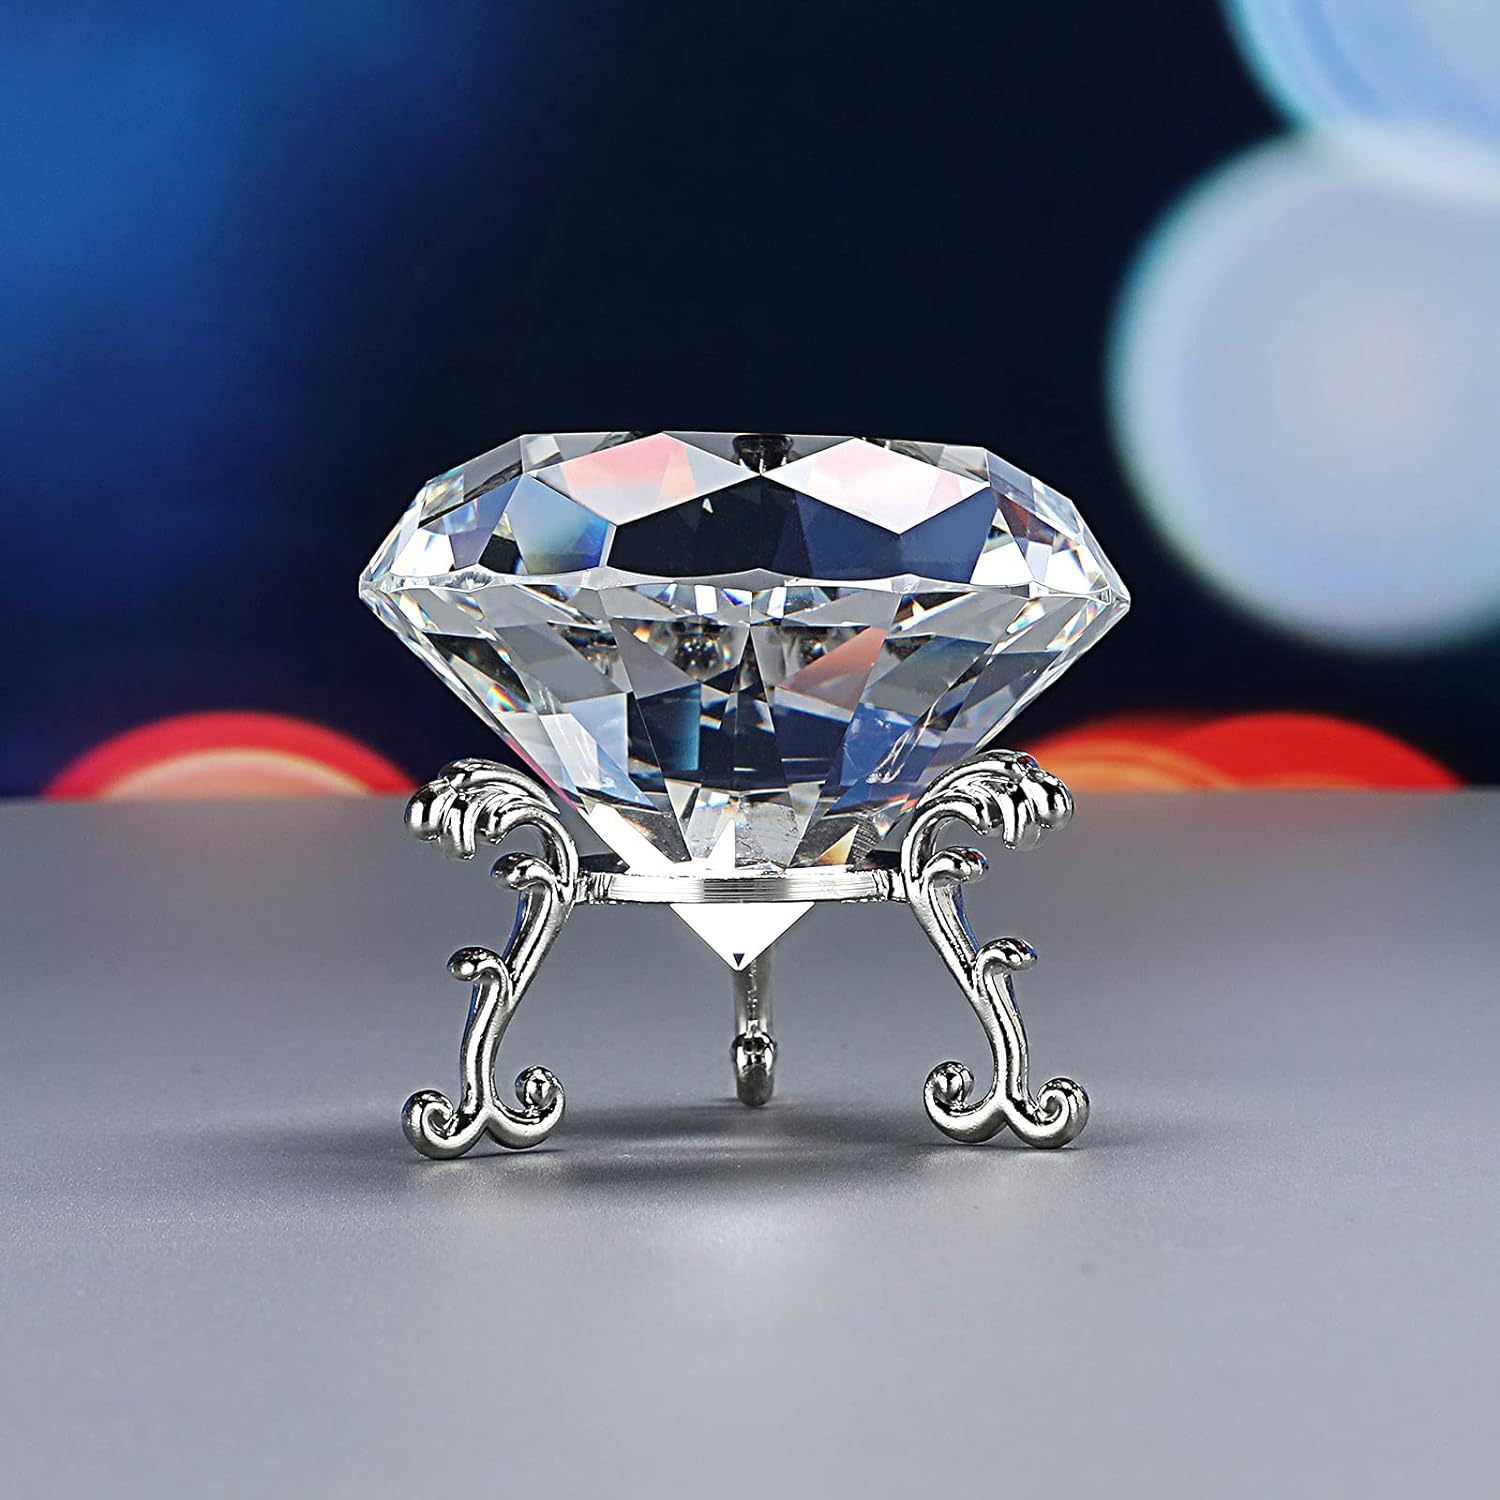 Moule silicone Gâteau Diamant 3D Carré - Pâtisserie Artistique